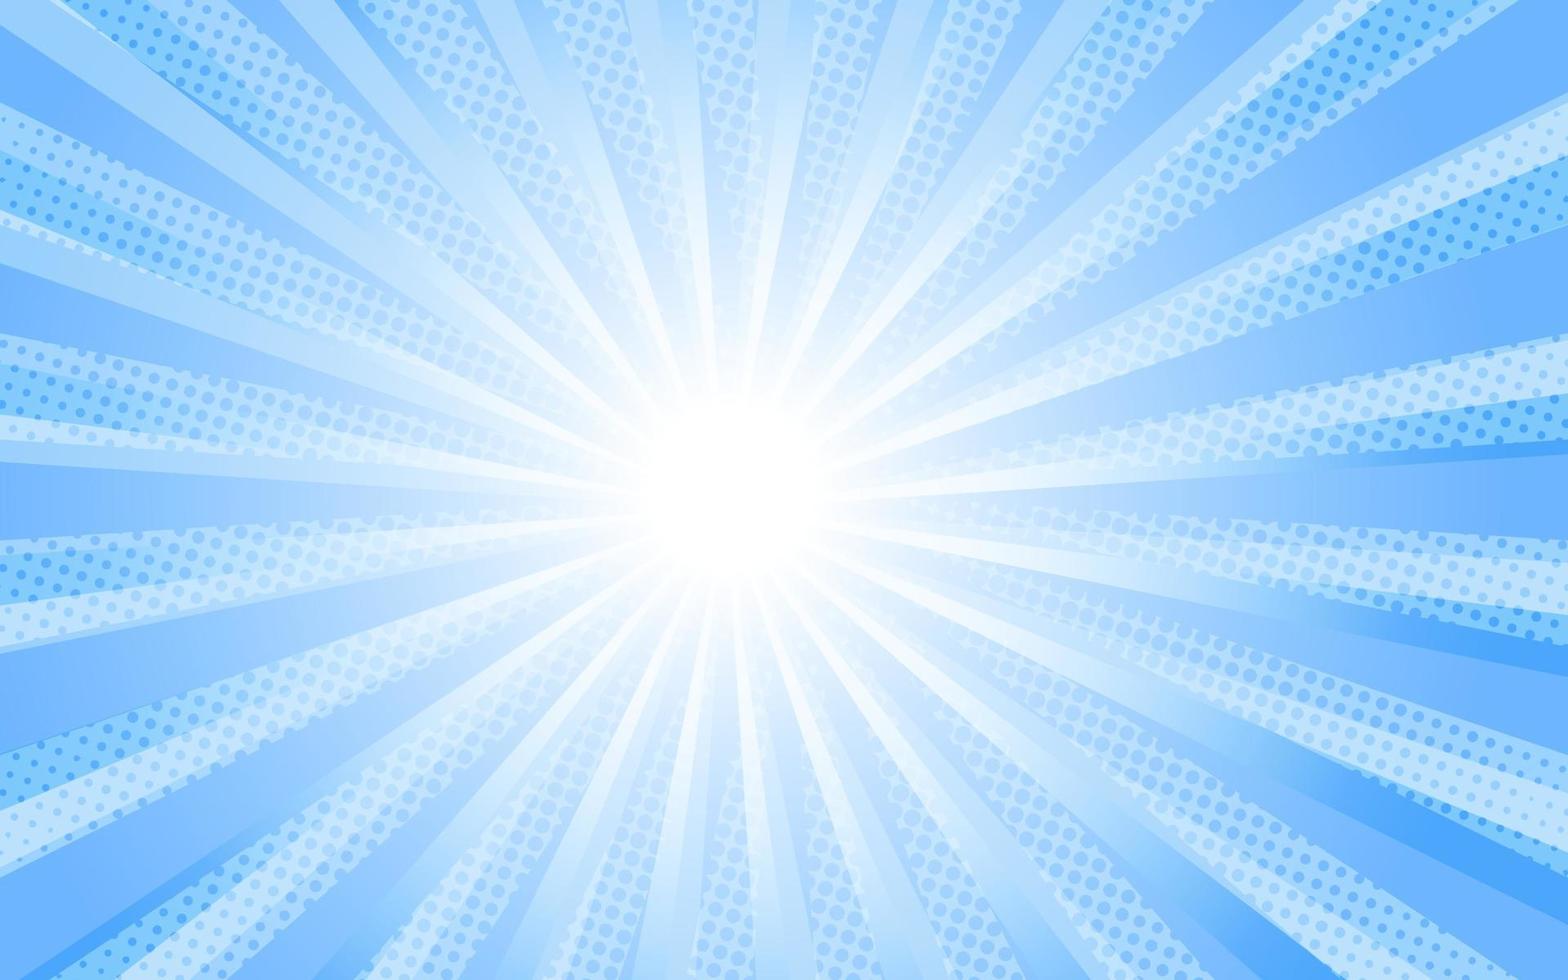 rayons de soleil style vintage rétro sur fond bleu, motif comique avec starburst et demi-teintes. effet sunburst rétro de dessin animé avec des points. des rayons. illustration vectorielle de bannière d'été vecteur